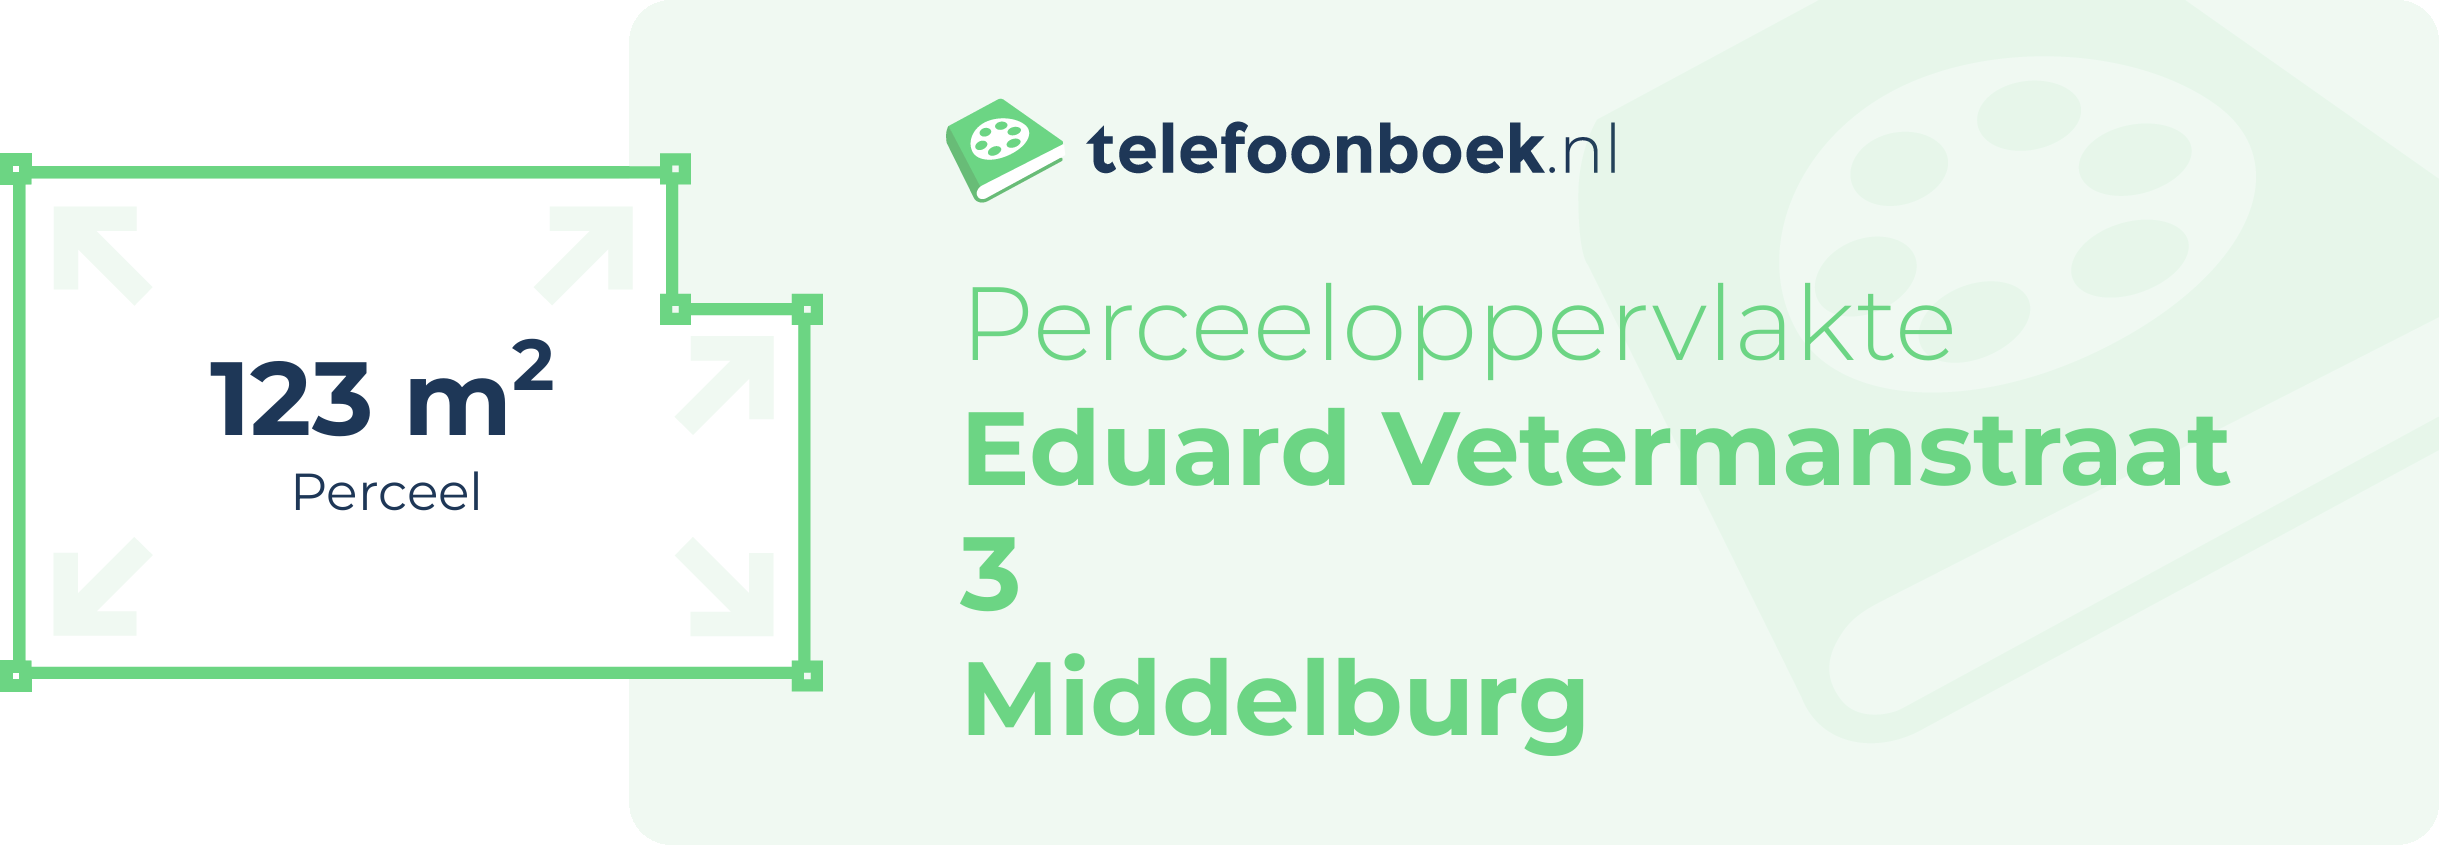 Perceeloppervlakte Eduard Vetermanstraat 3 Middelburg